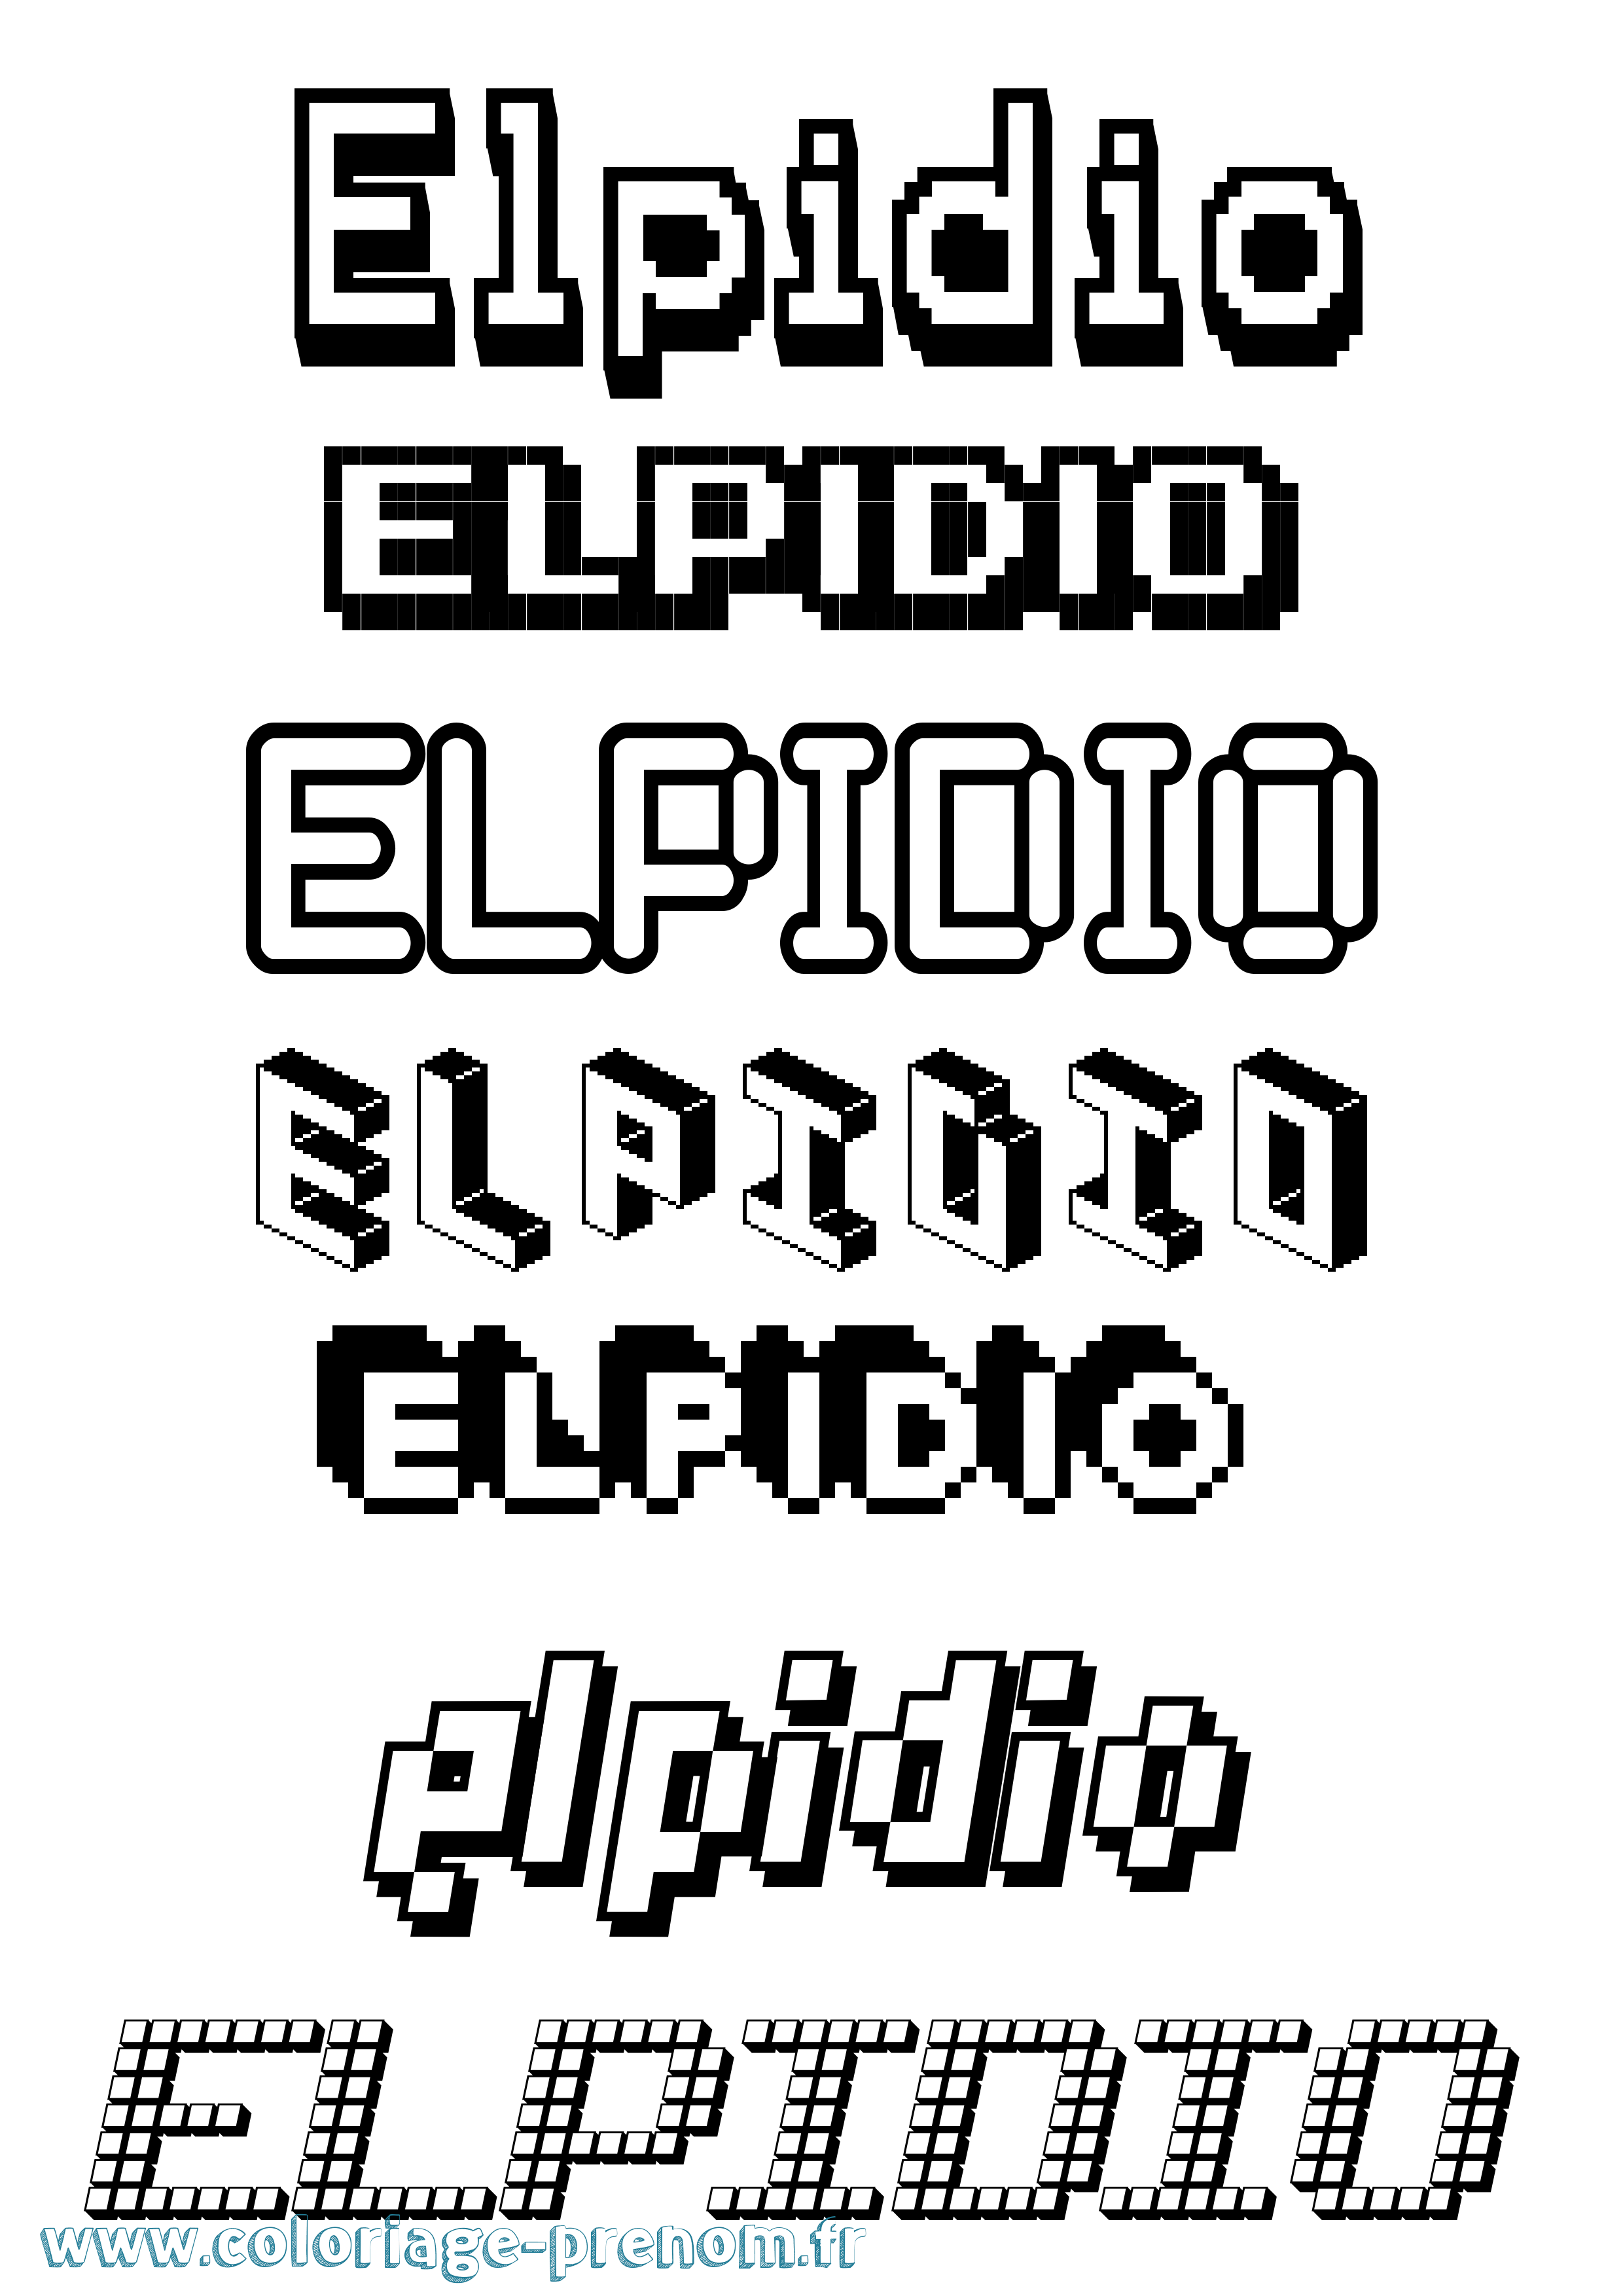 Coloriage prénom Elpidio Pixel